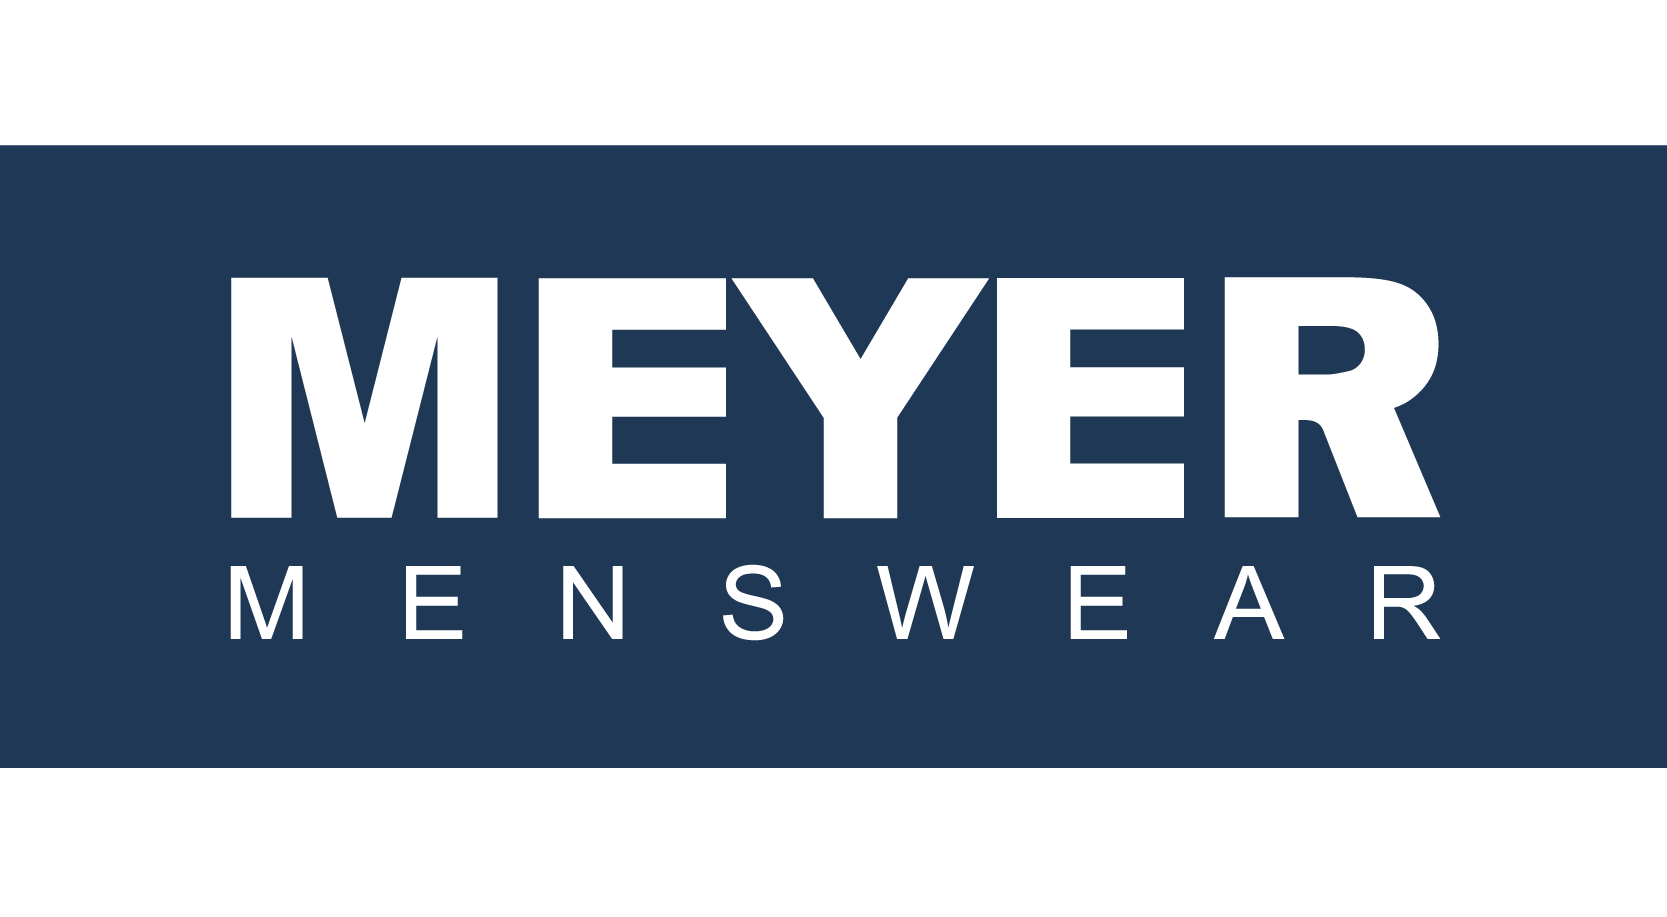 Meyer menswear